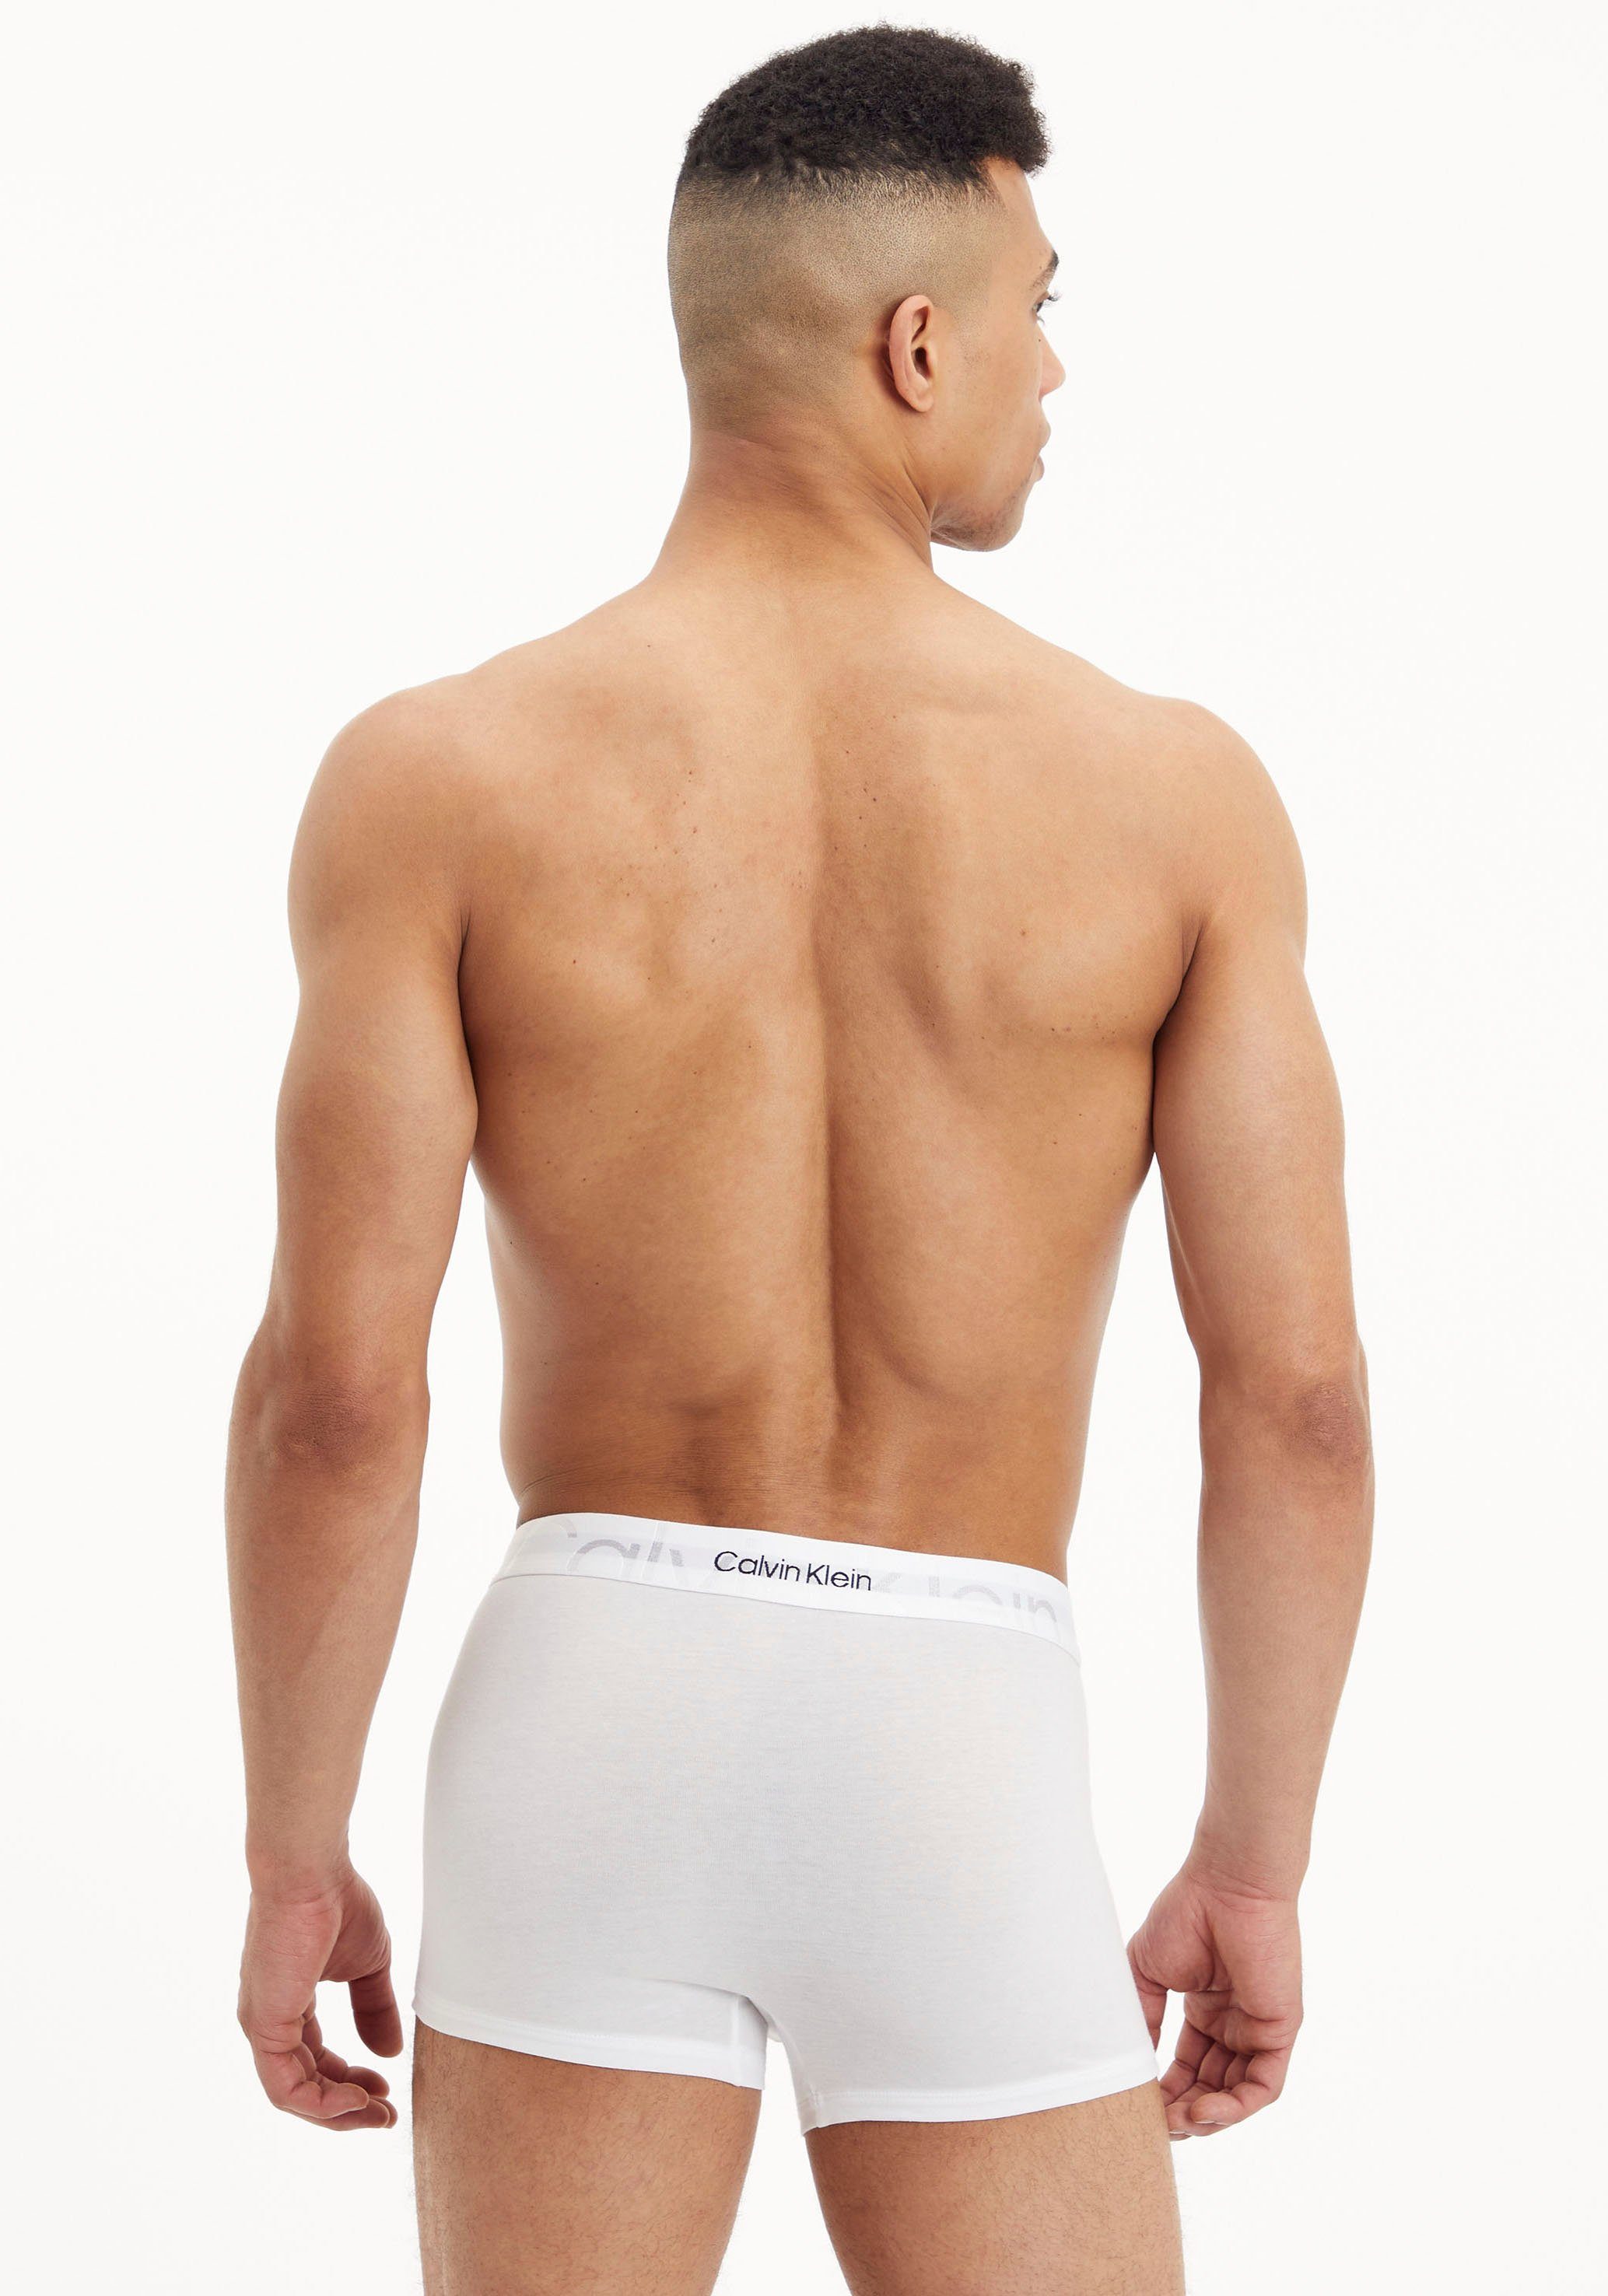 Wäschebund Klein mit am Boxer Underwear Calvin Logoschriftzug weiß